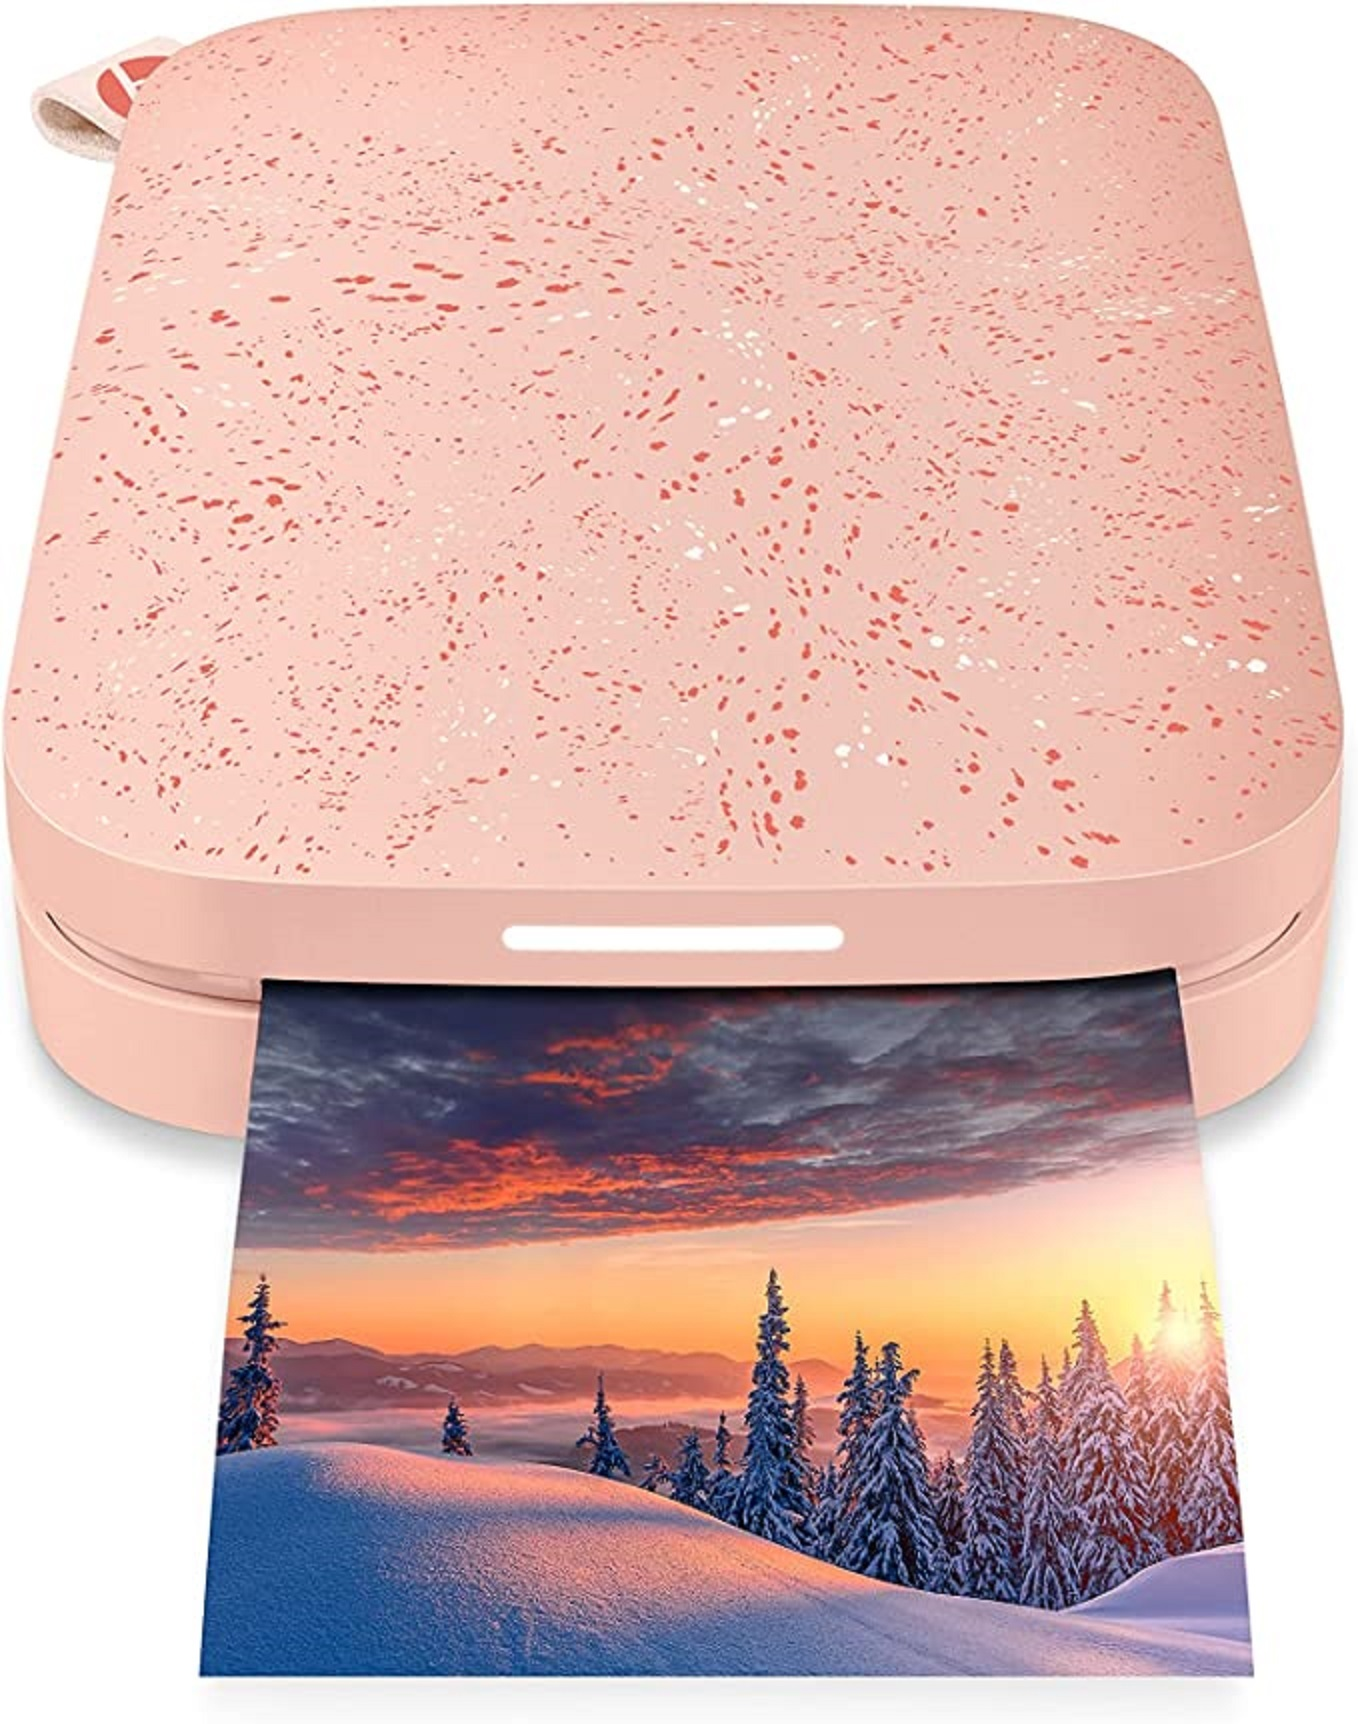 HP Sprocket Pink ZINK Fotodrucker